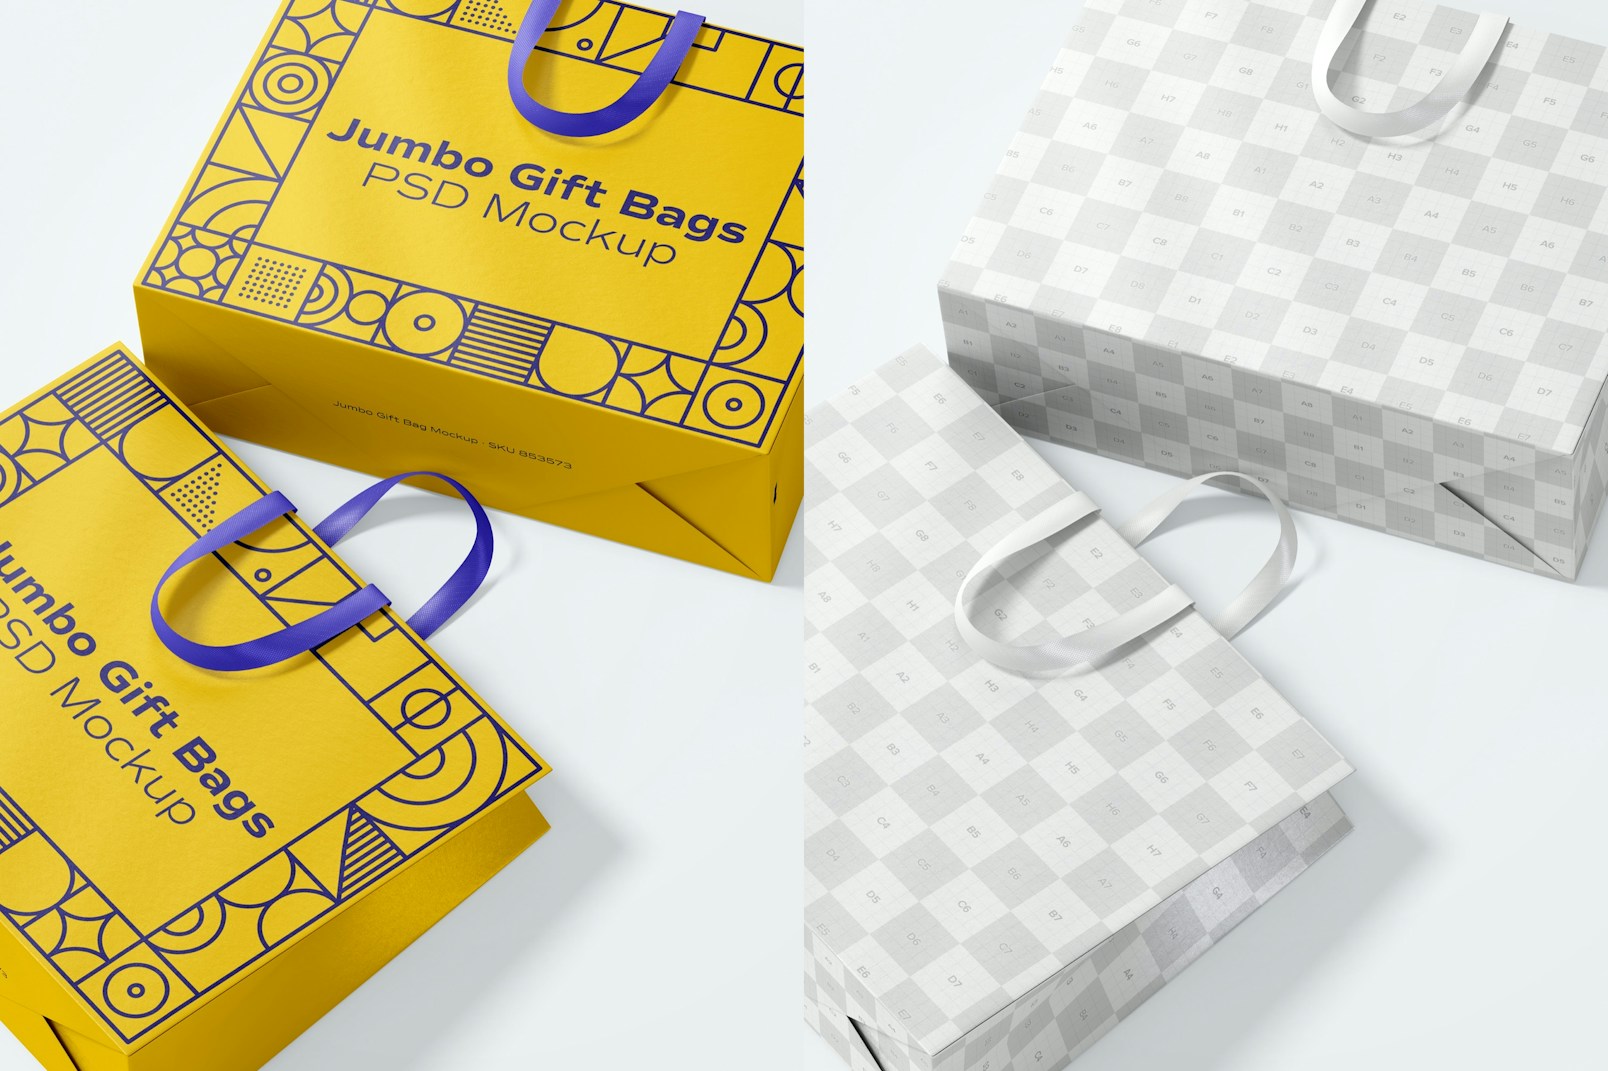 Jumbo Gift Bags with Ribbon Handle Mockup, Close Up